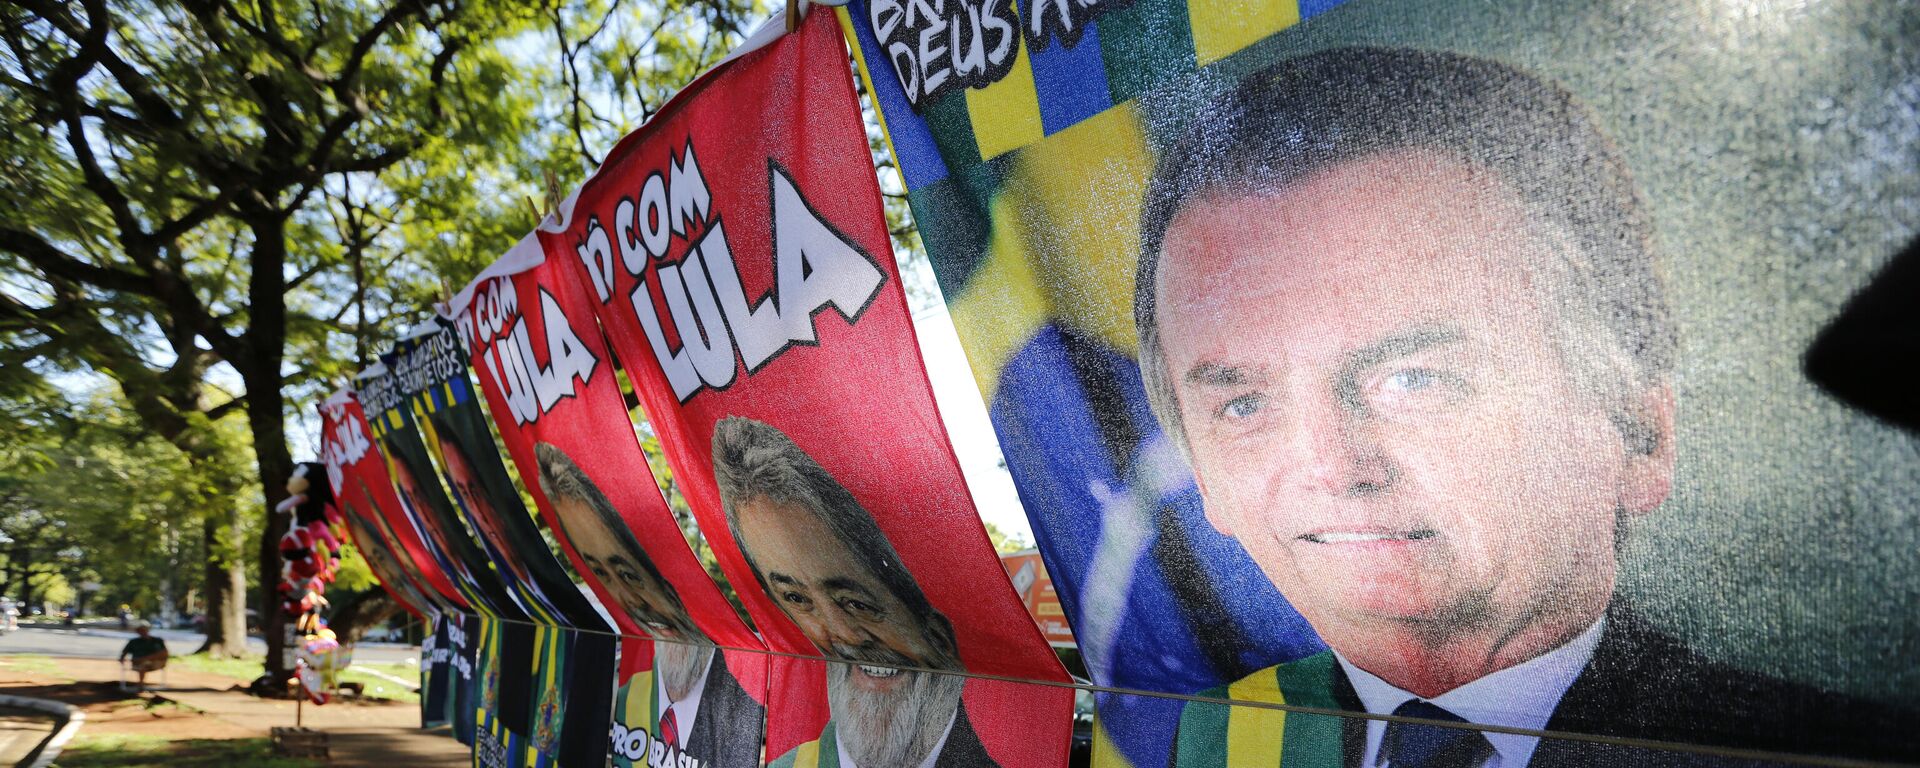 Vendedor ambulante vende toalhas com fotos do presidente Jair Bolsonaro (PL) e do ex-presidente Luiz Inácio Lula da Silva (PT) em Foz do Iguaçu (PR), em 11 de fevereiro de 2022 - Sputnik Brasil, 1920, 07.04.2022